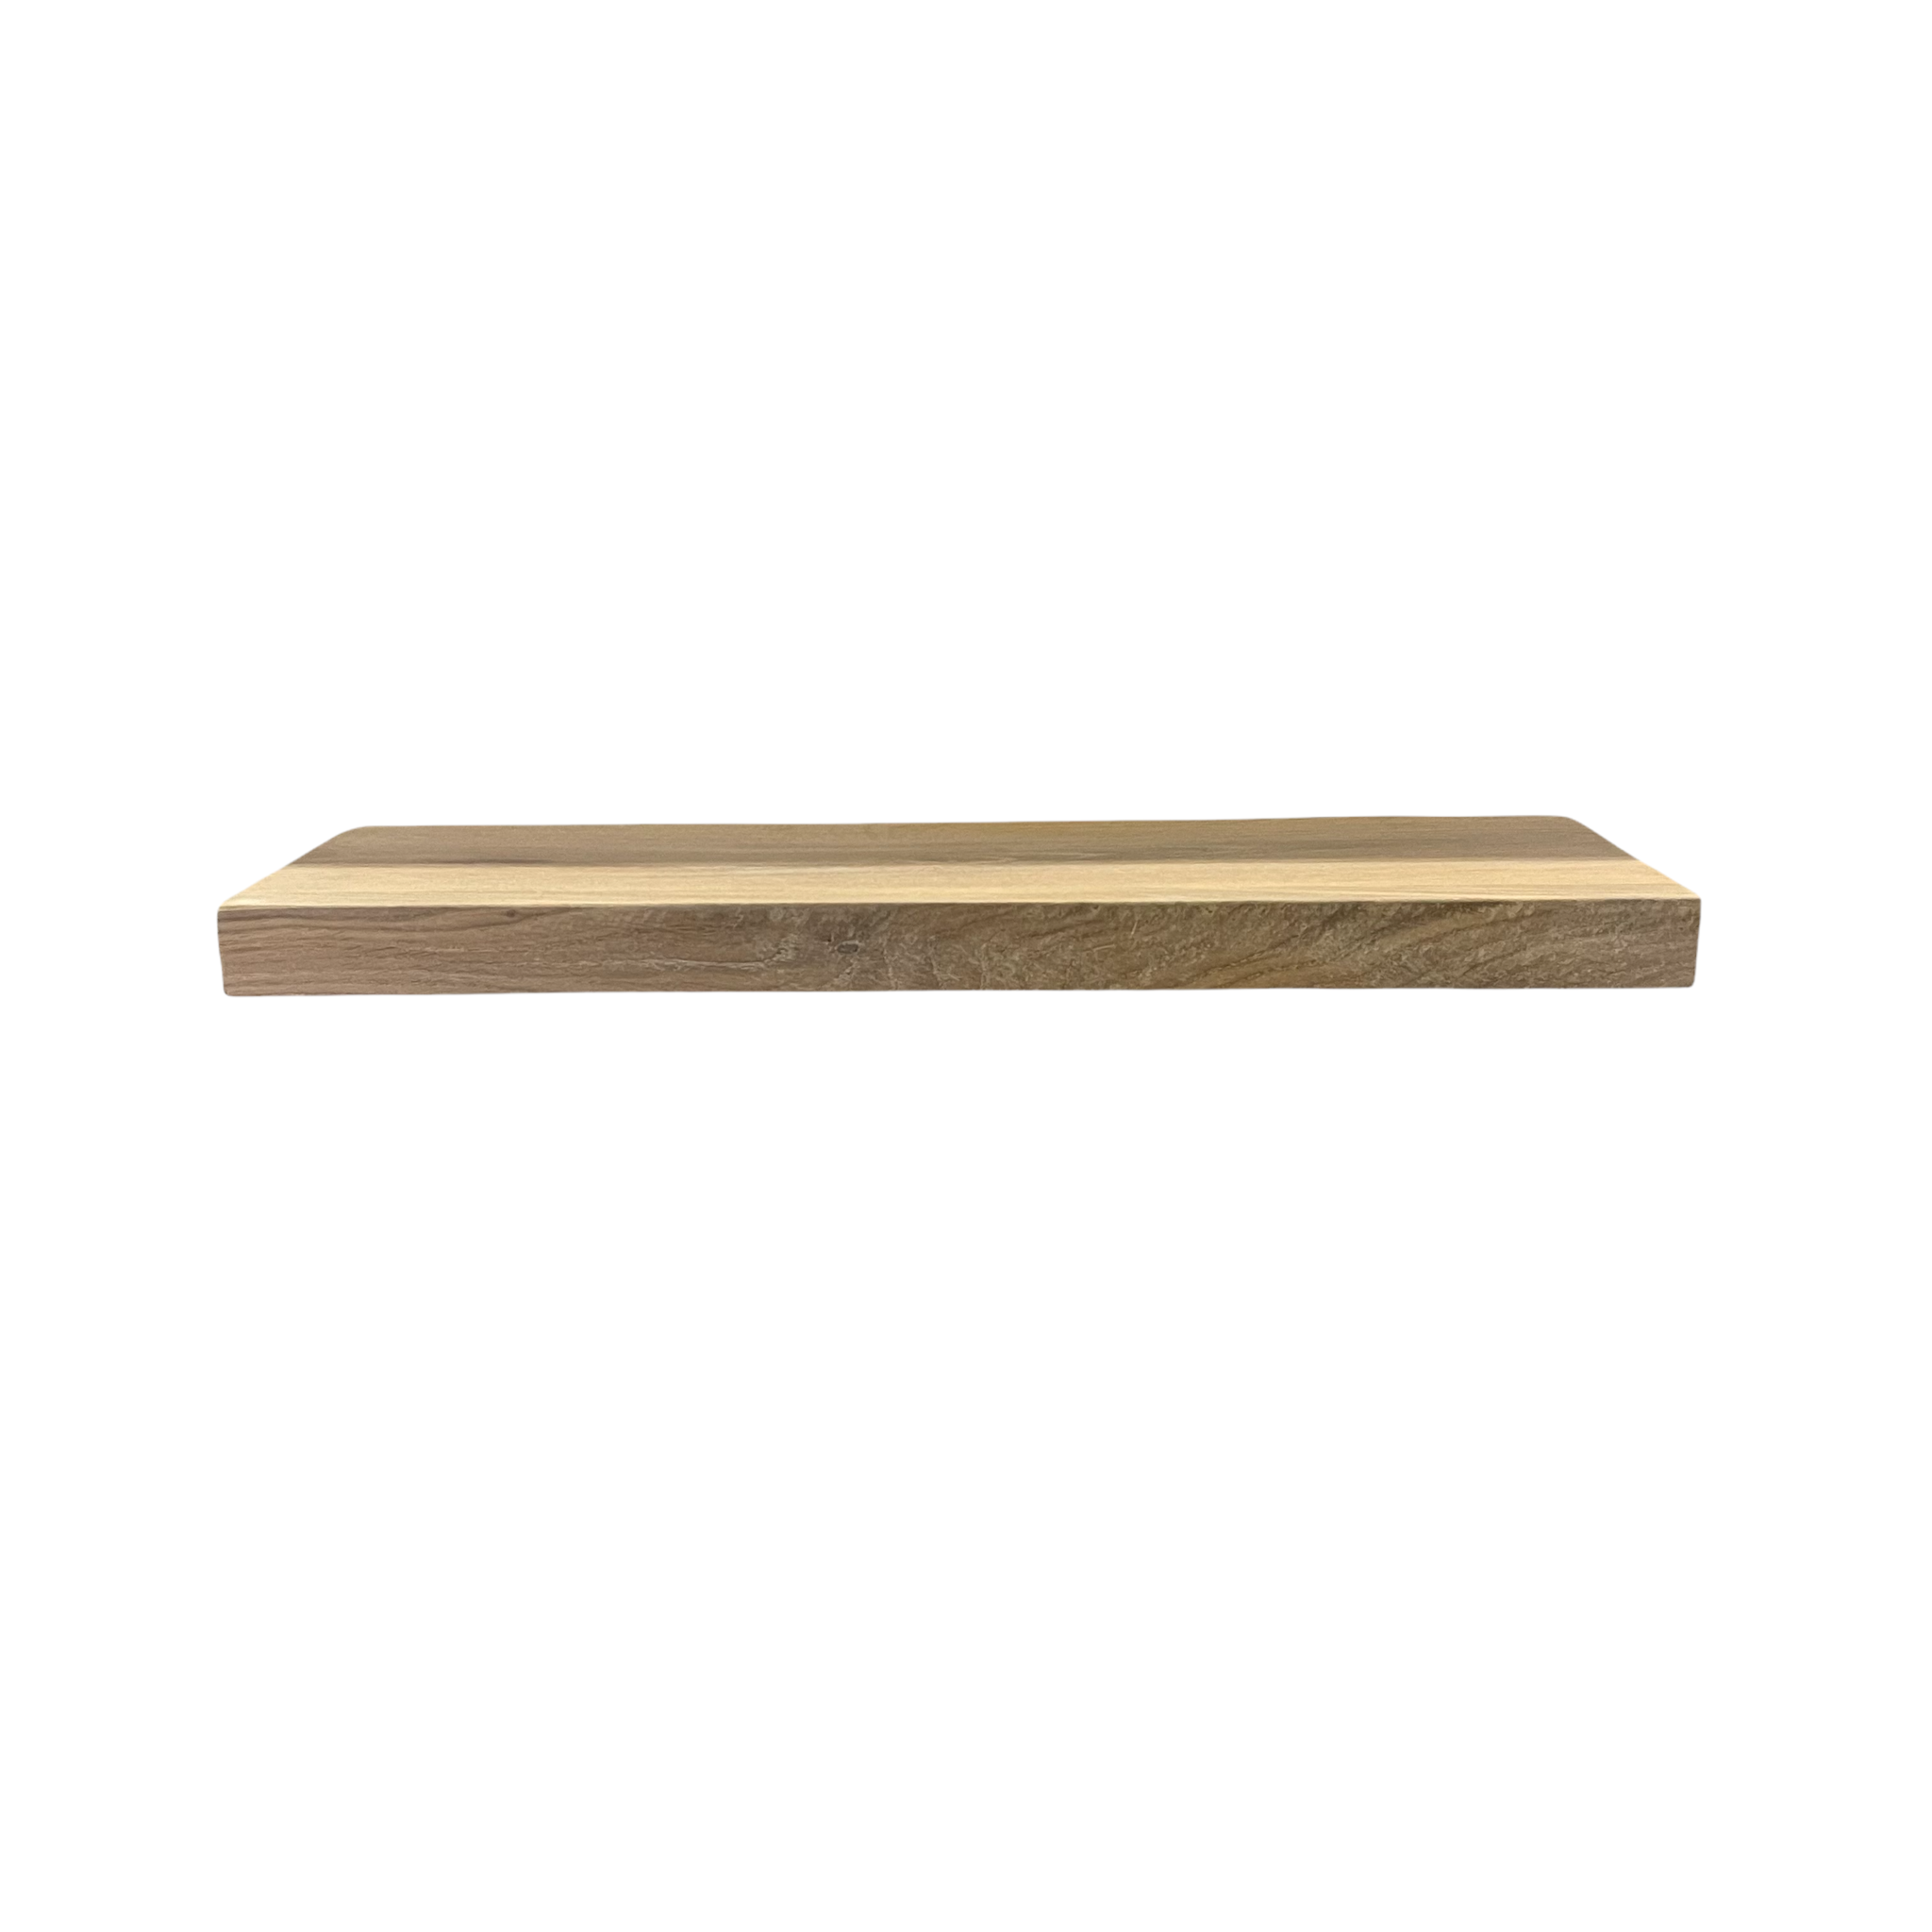 Wood & Work Houten wandplank - Onbehandeld - Klein - 4cm dik eiken - Recht